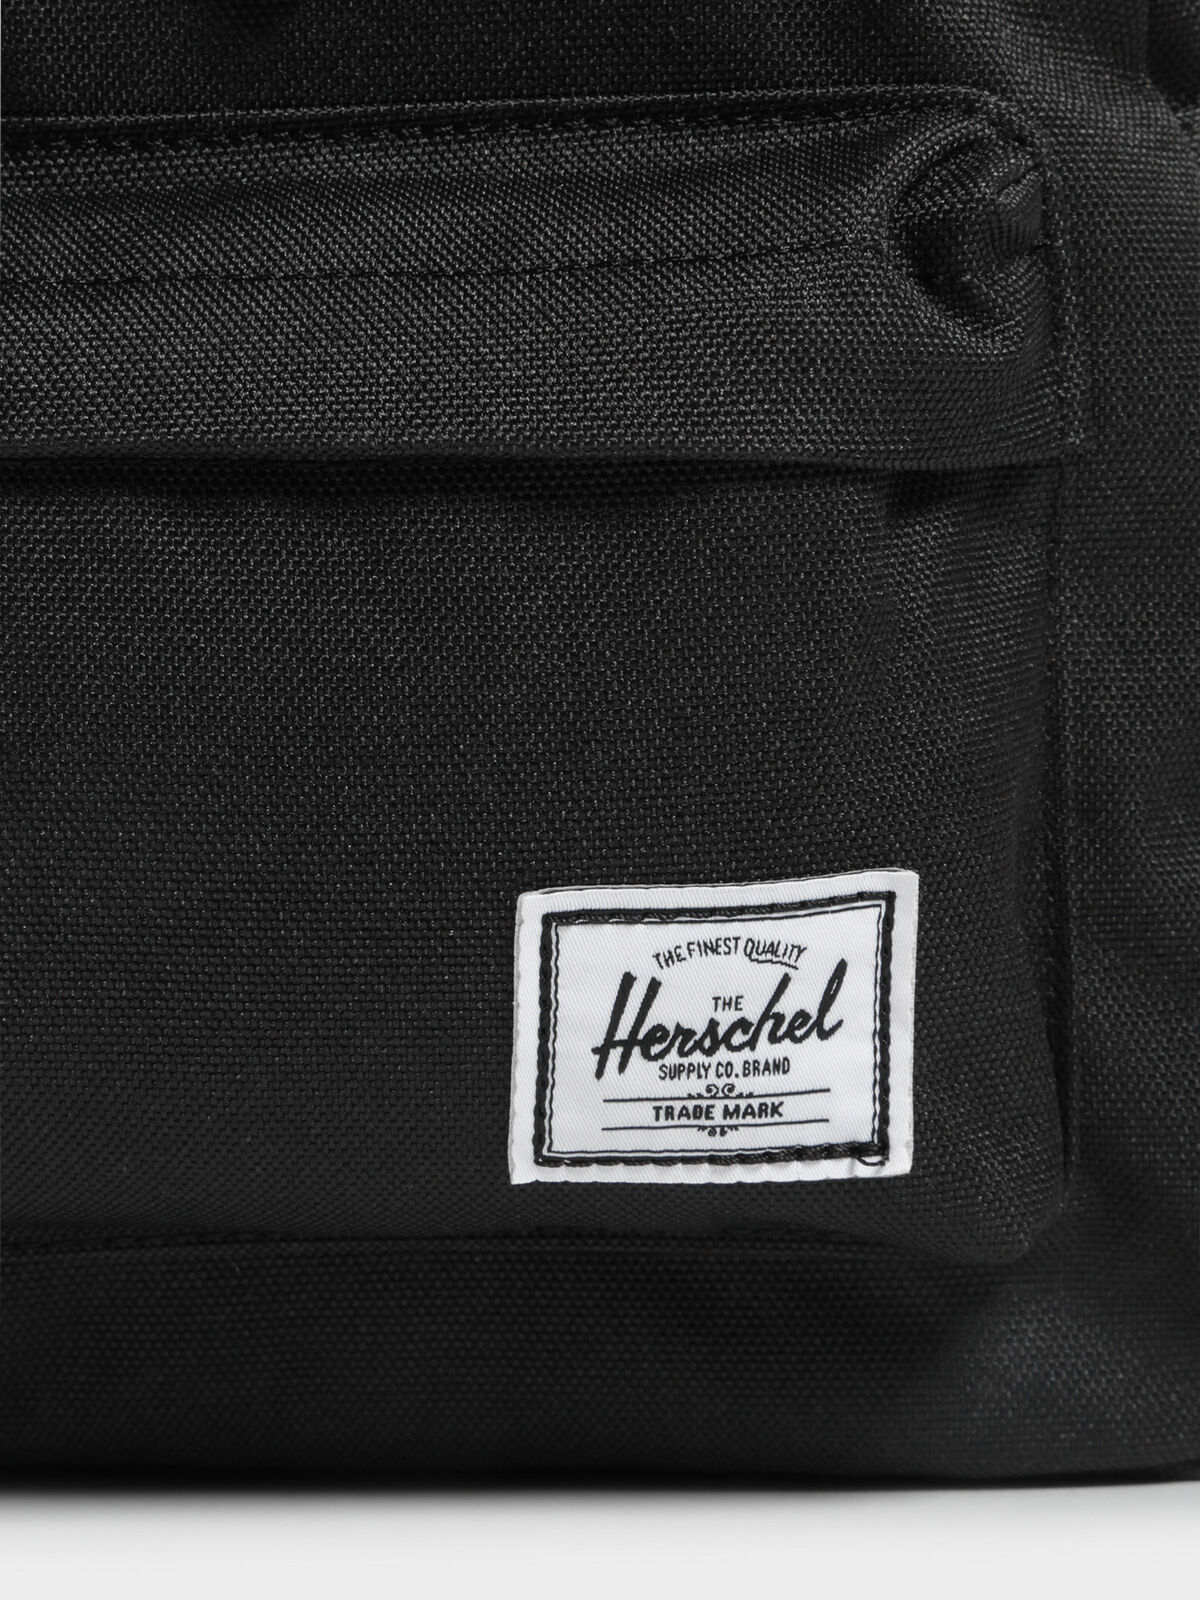 Heritage Mini Backpack in Black